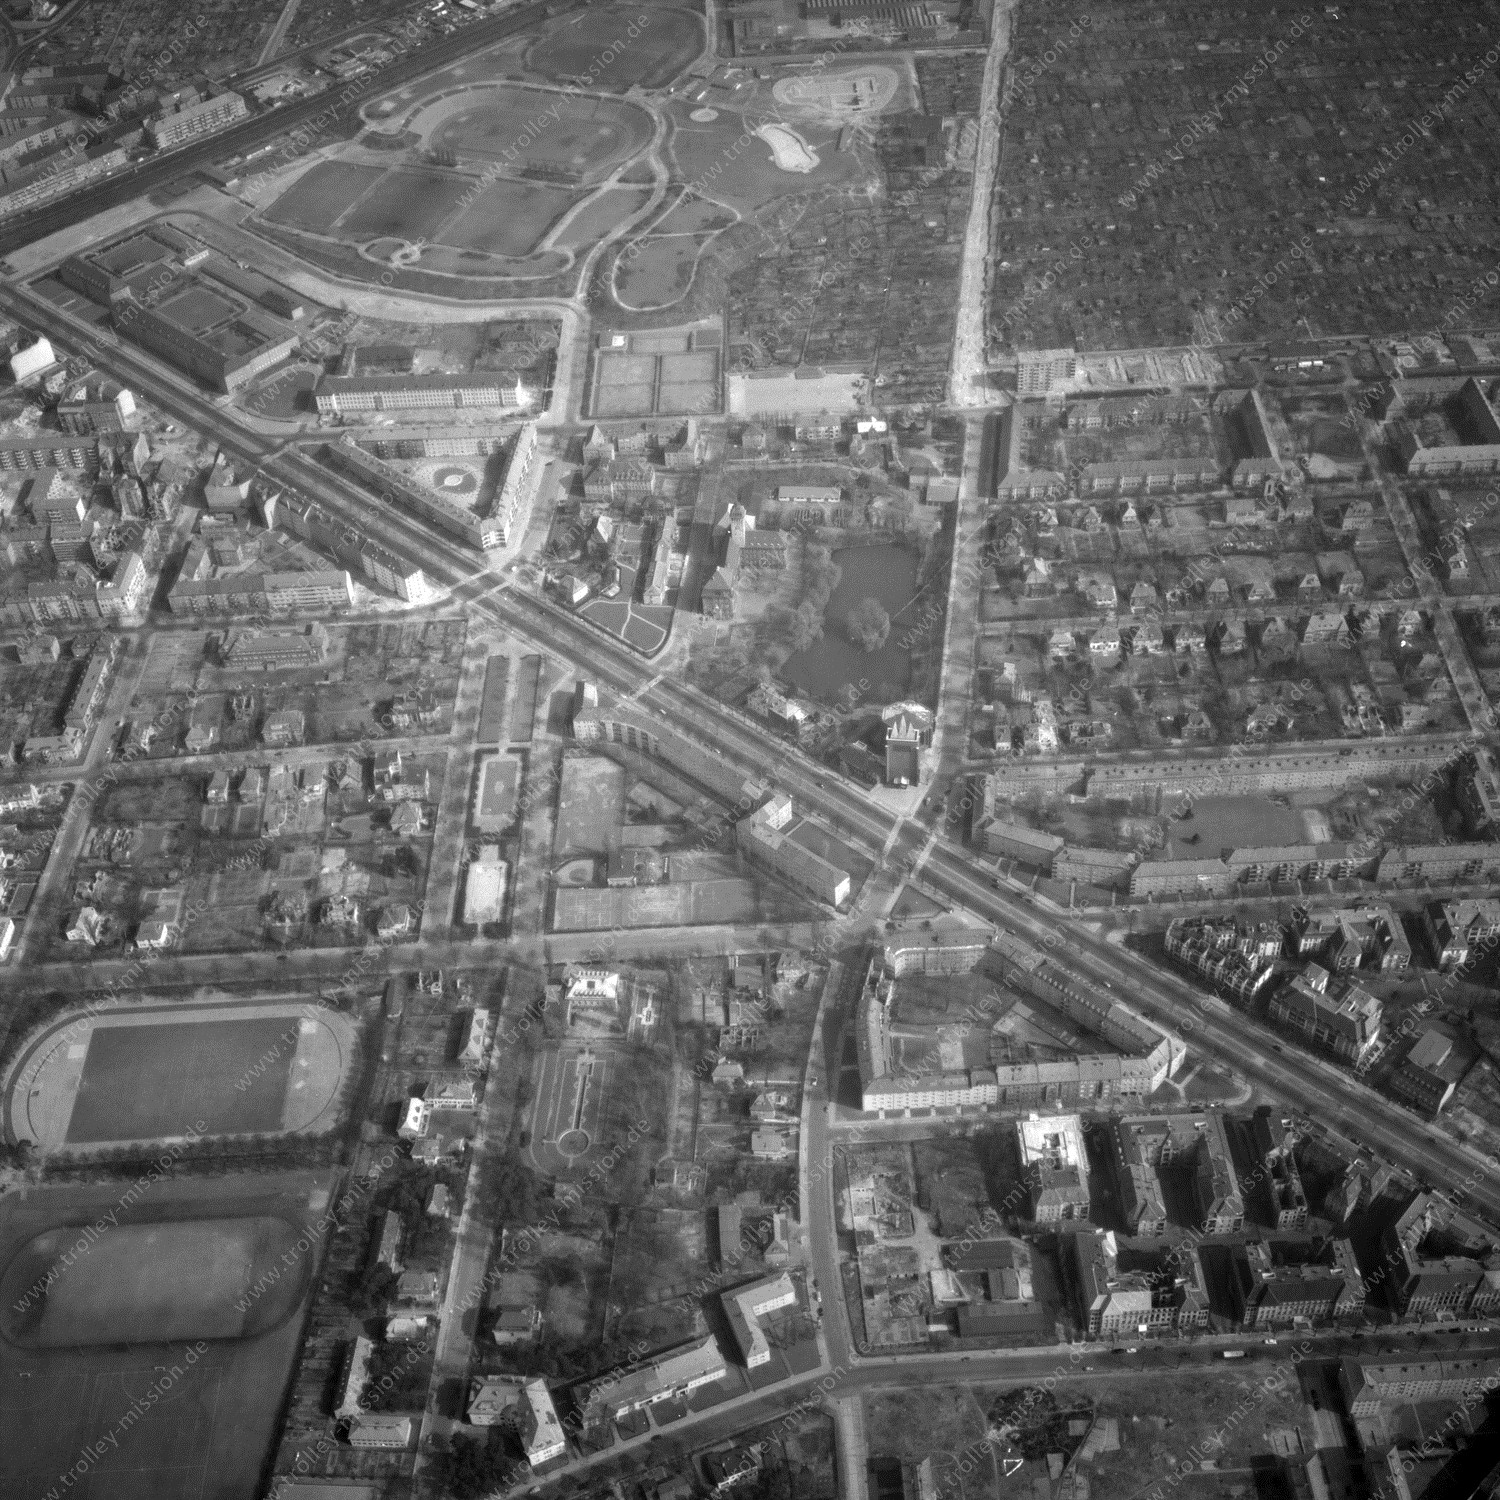 Alte Fotos und Luftbilder von Berlin - Luftbildaufnahme Nr. 01 - Historische Luftaufnahmen von West-Berlin aus dem Jahr 1954 - Flugstrecke Alpha